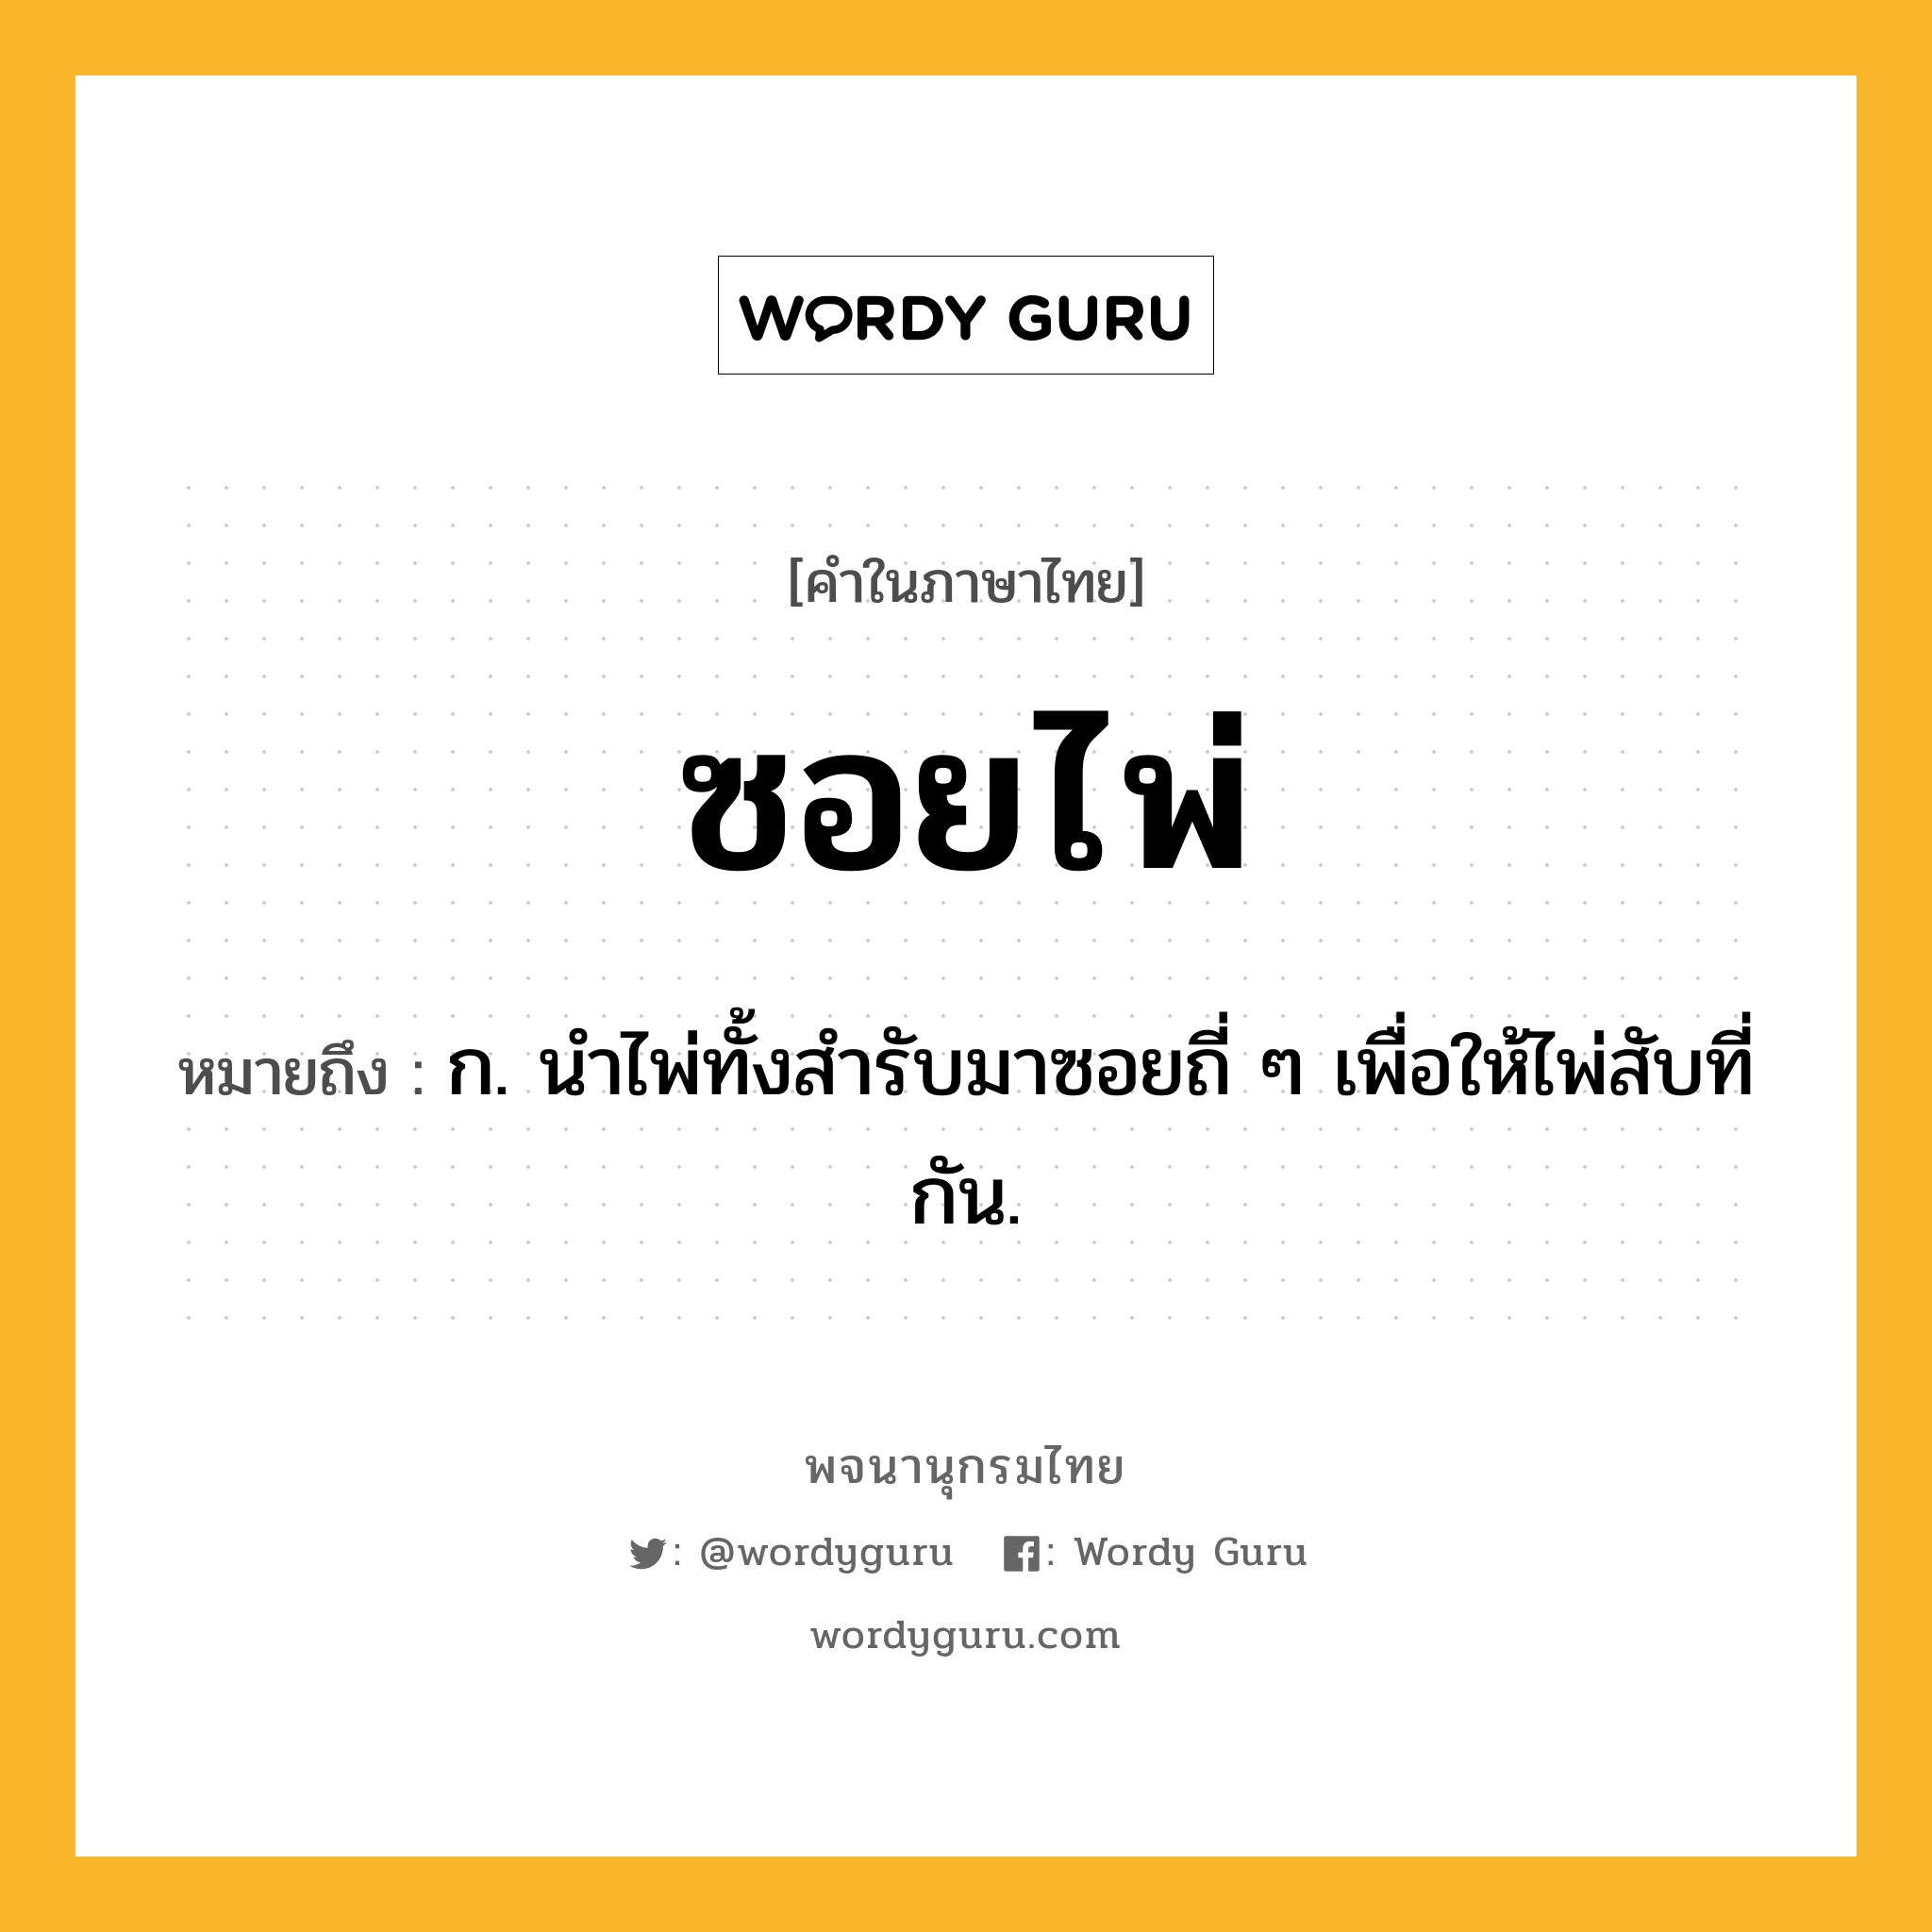 ซอยไพ่ ความหมาย หมายถึงอะไร?, คำในภาษาไทย ซอยไพ่ หมายถึง ก. นำไพ่ทั้งสำรับมาซอยถี่ ๆ เพื่อให้ไพ่สับที่กัน.